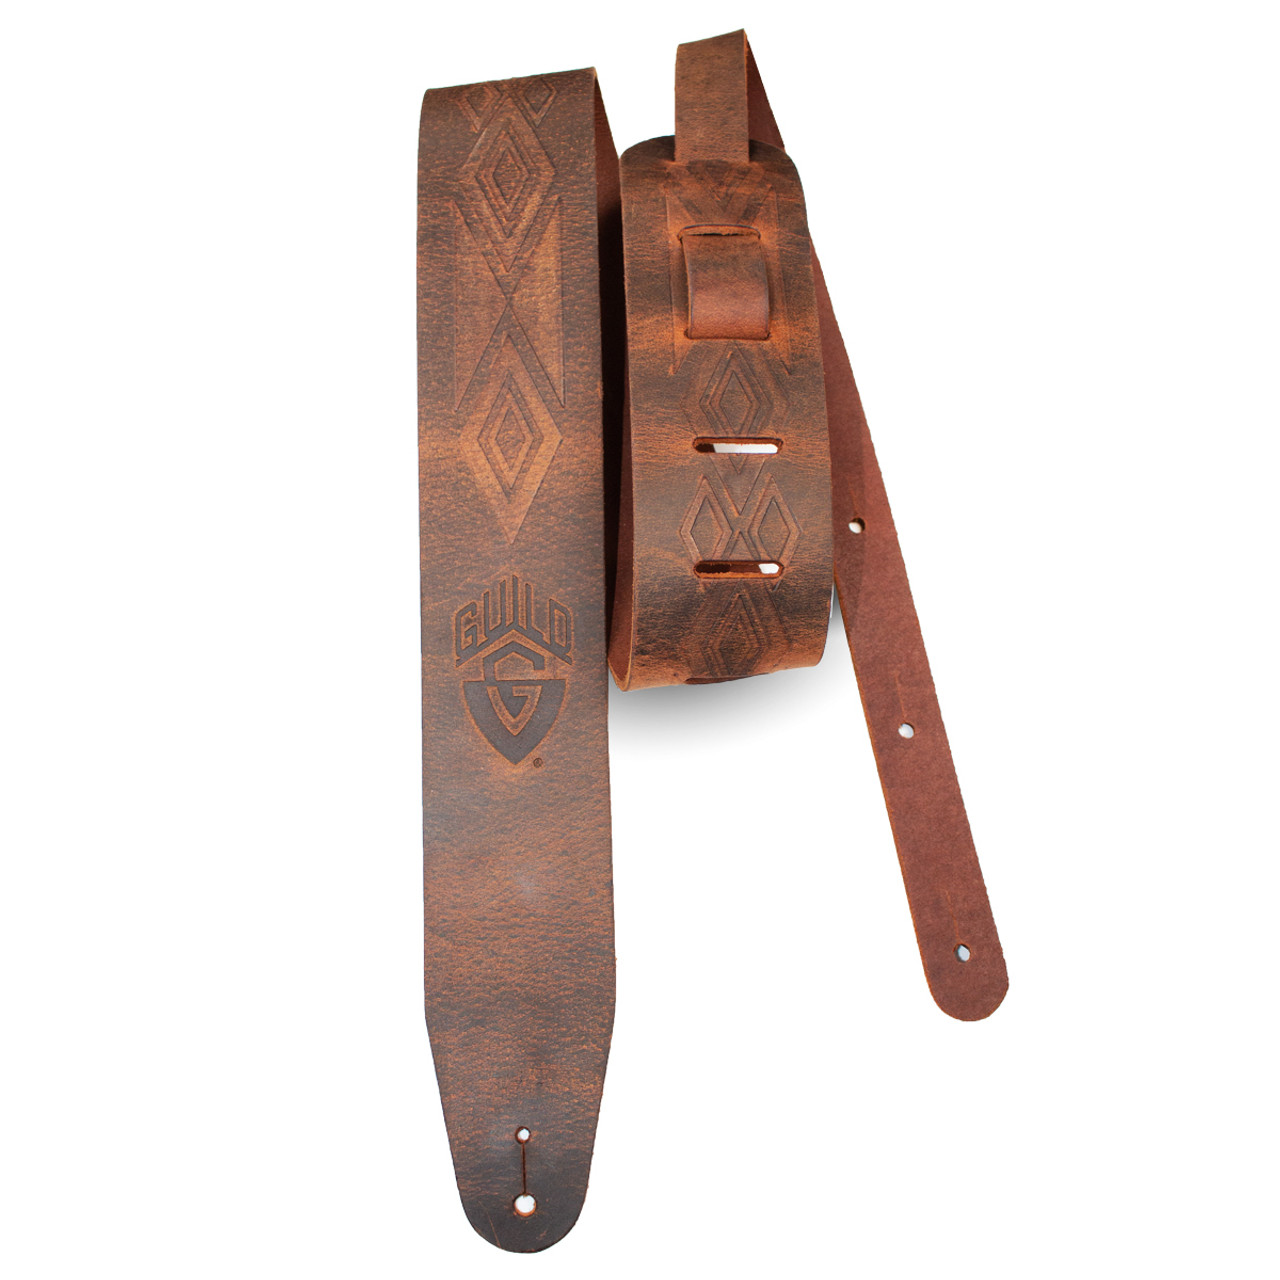 ギルド ギターレザーストラップ Guild Tooled Americana leather strap